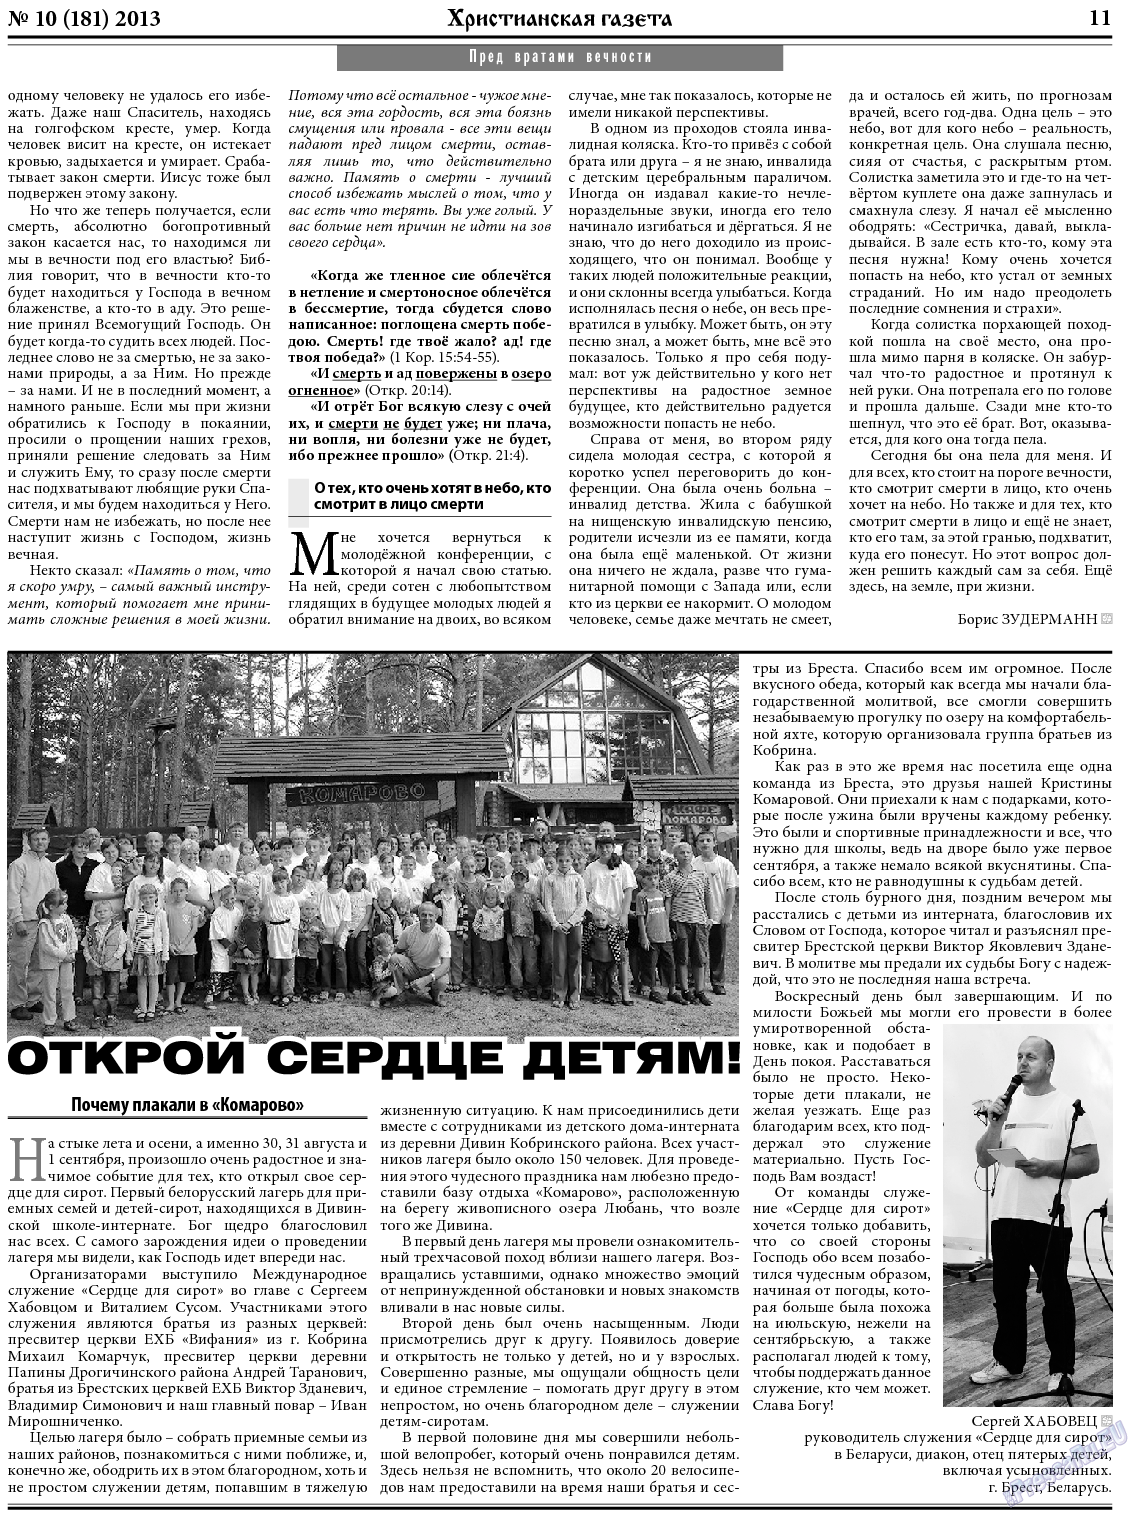 Христианская газета, газета. 2013 №10 стр.11